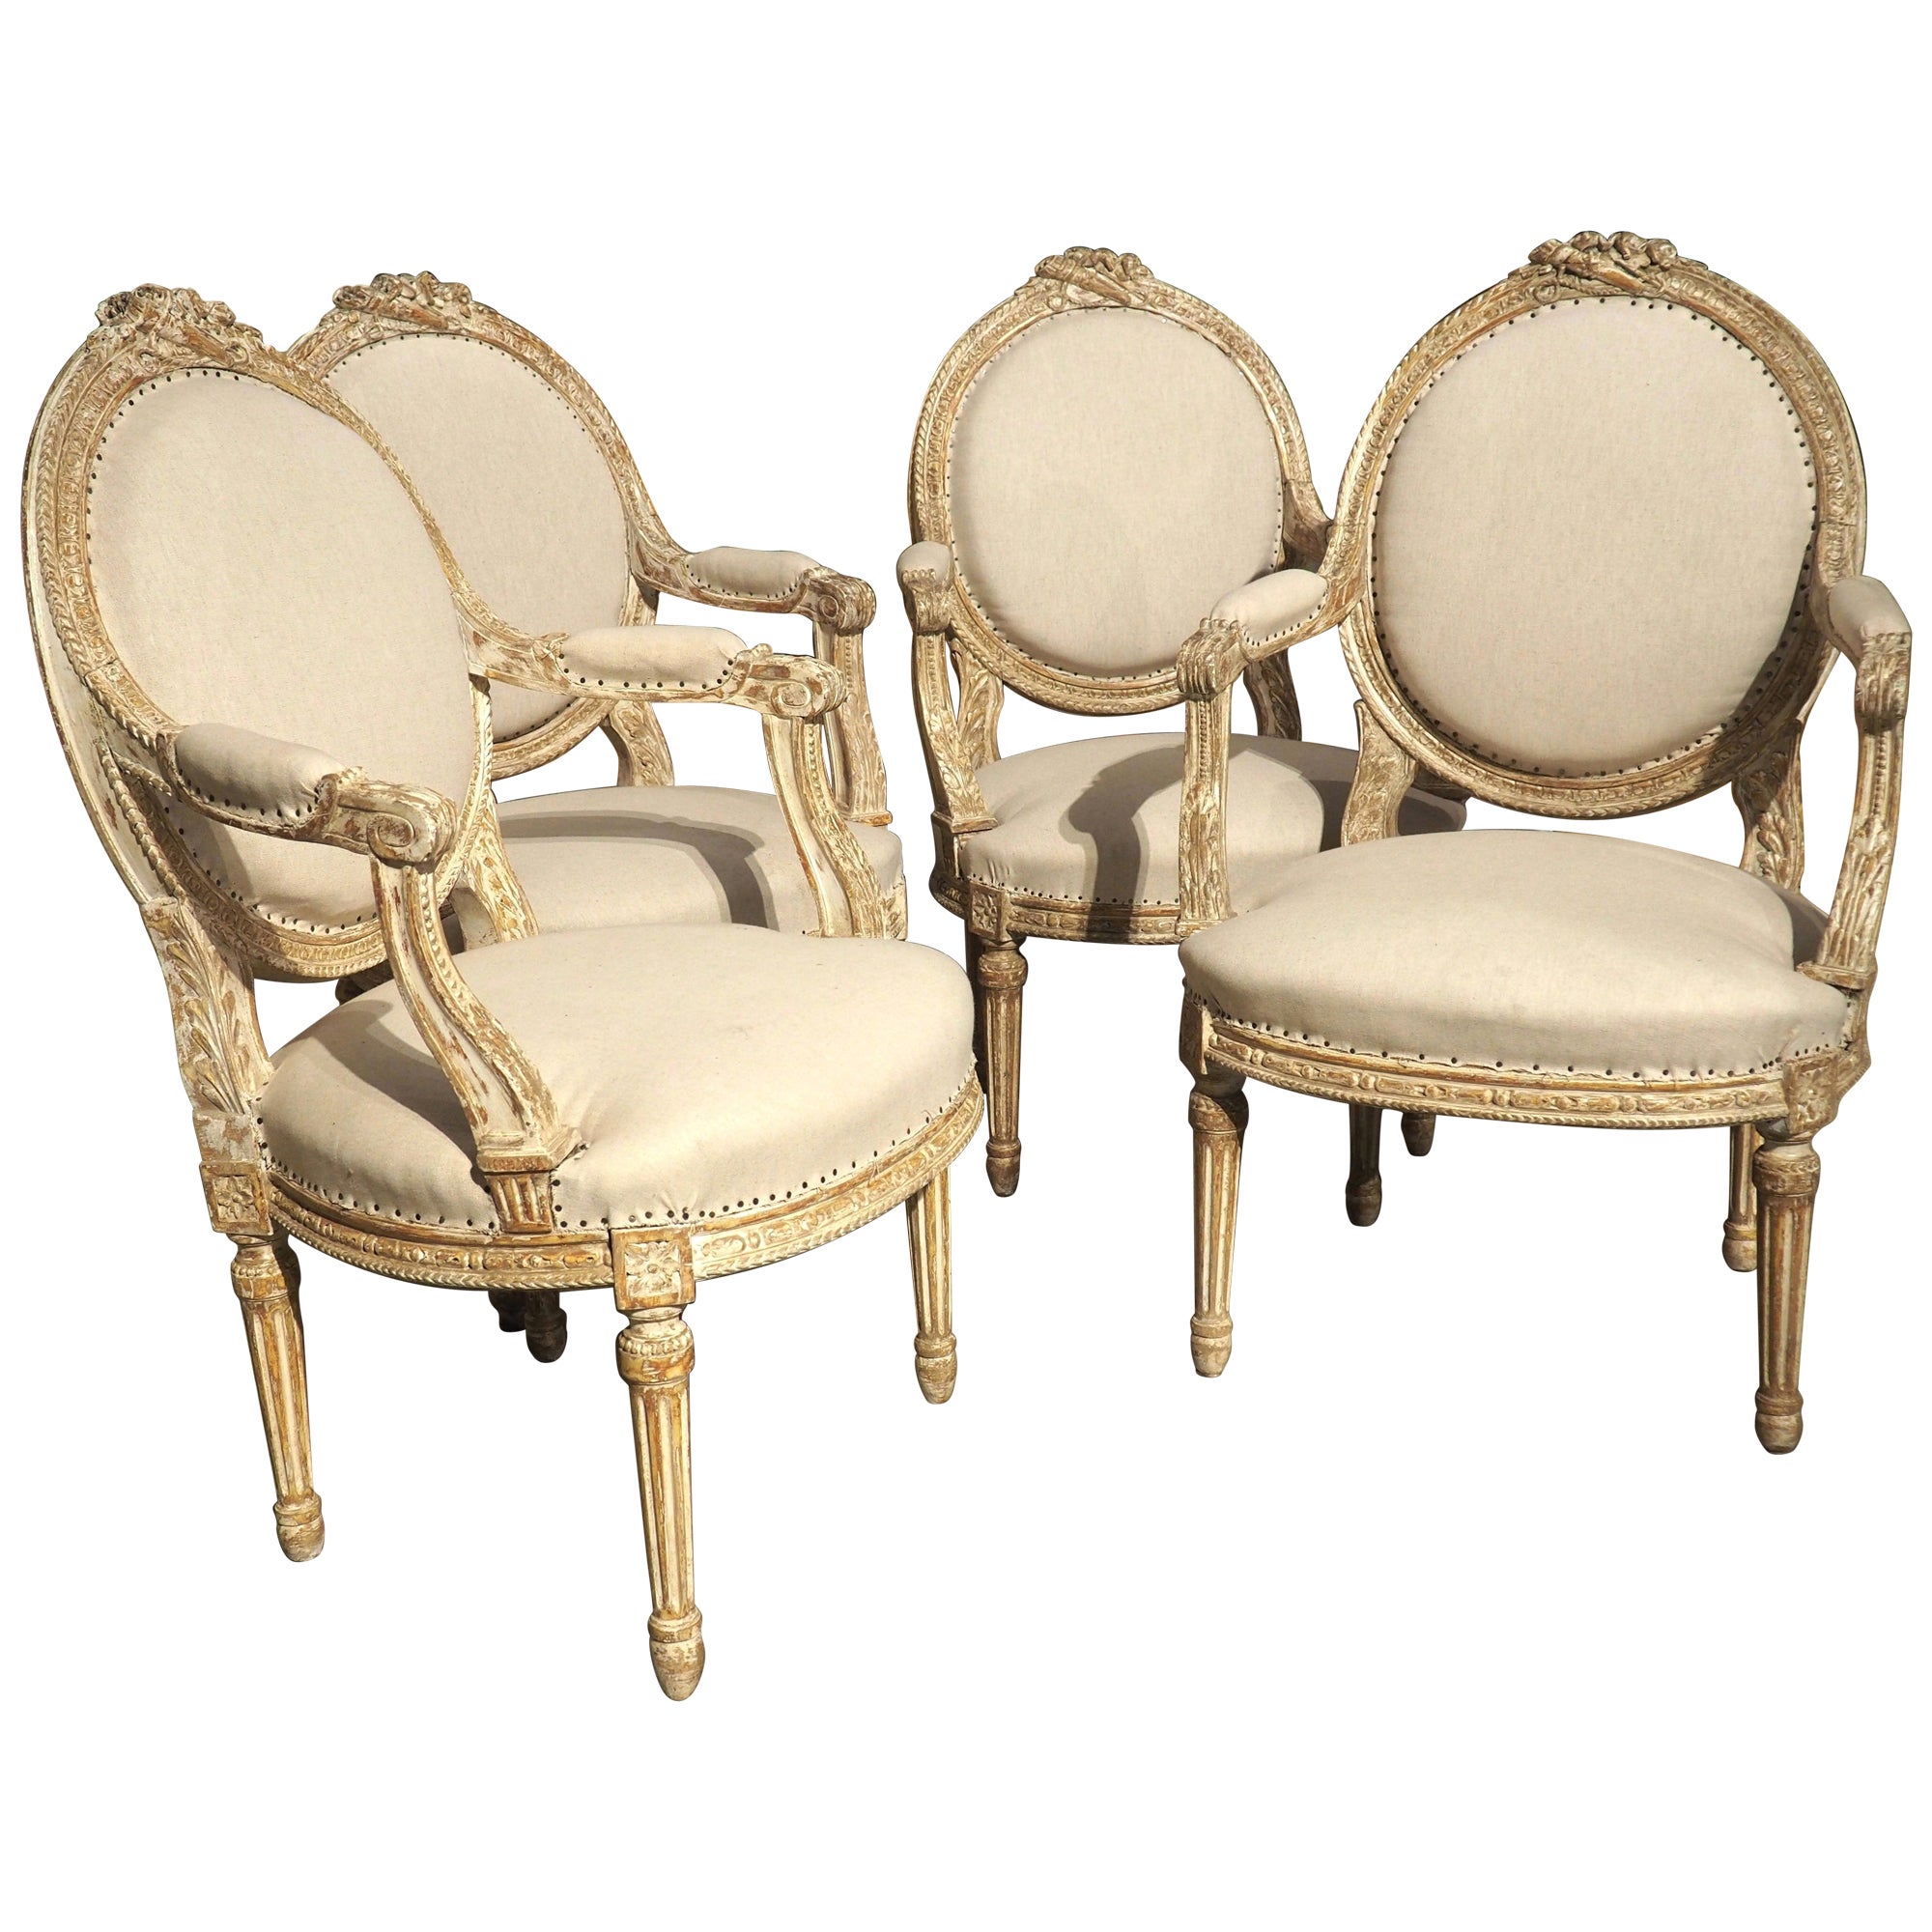 Satz von 4 französischen Cabriolet-Sesseln im Louis-XVI.-Stil, teilweise lackiert, um 1885